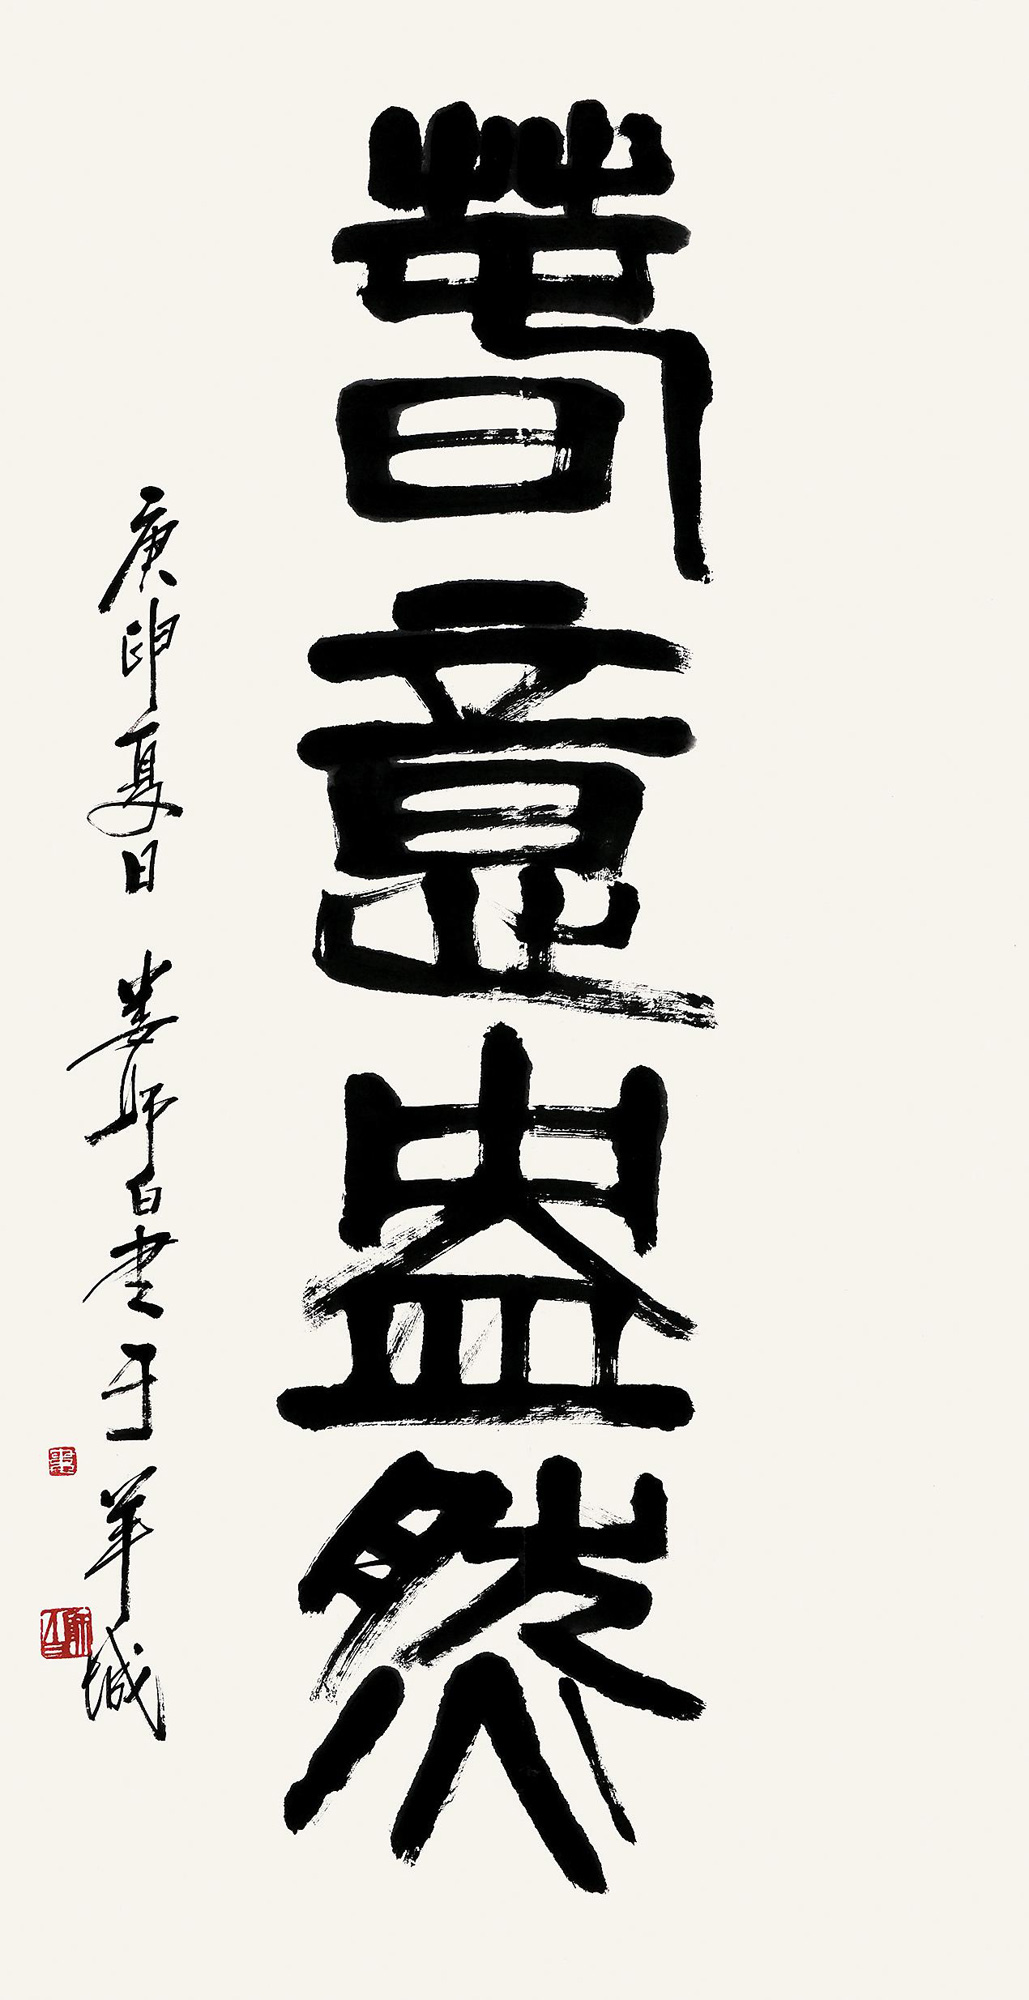 作者娄师白 (1918～2010)拍品分类中国书画